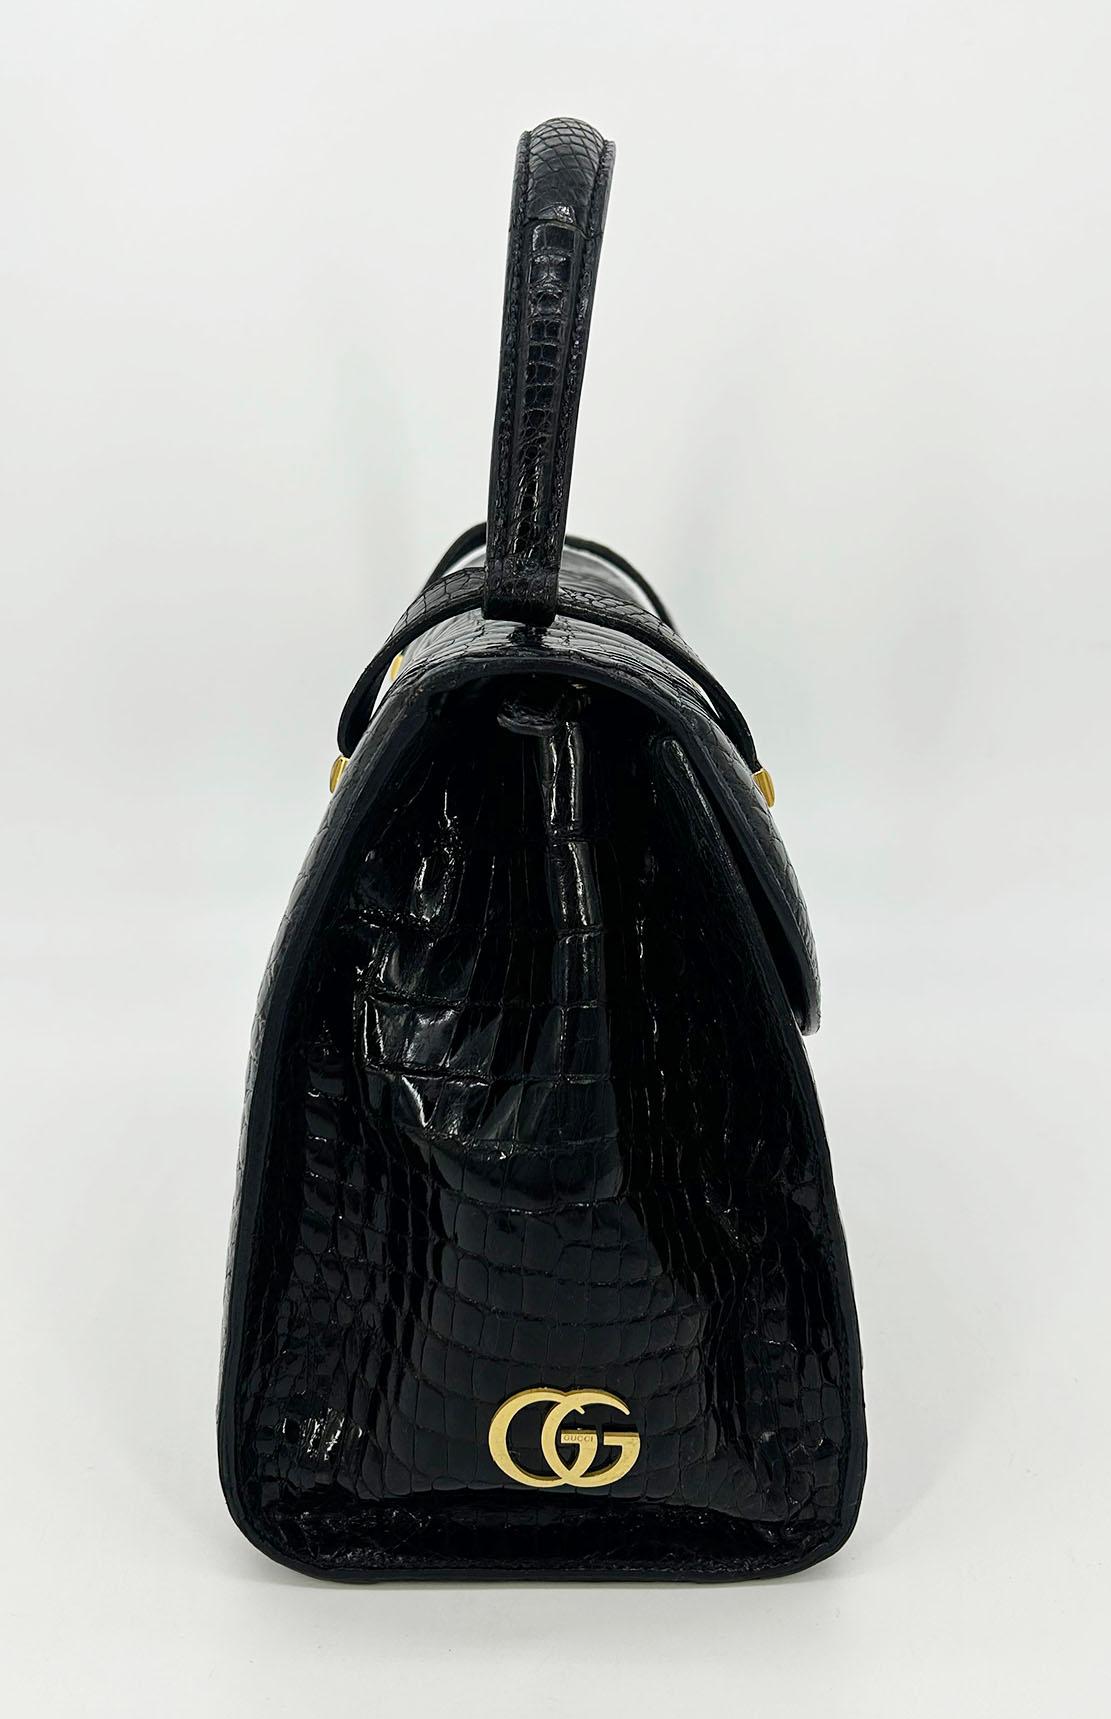 Gucci Vintage Black Alligator Kelly Bag c1970s in gutem Zustand. Glänzendes schwarzes Alligatorleder mit goldfarbenen Beschlägen und passendem Alligatorgriff oben. Goldfarbene GG Logo-Hardware an der unteren rechten Seite. Der Verschluss an der